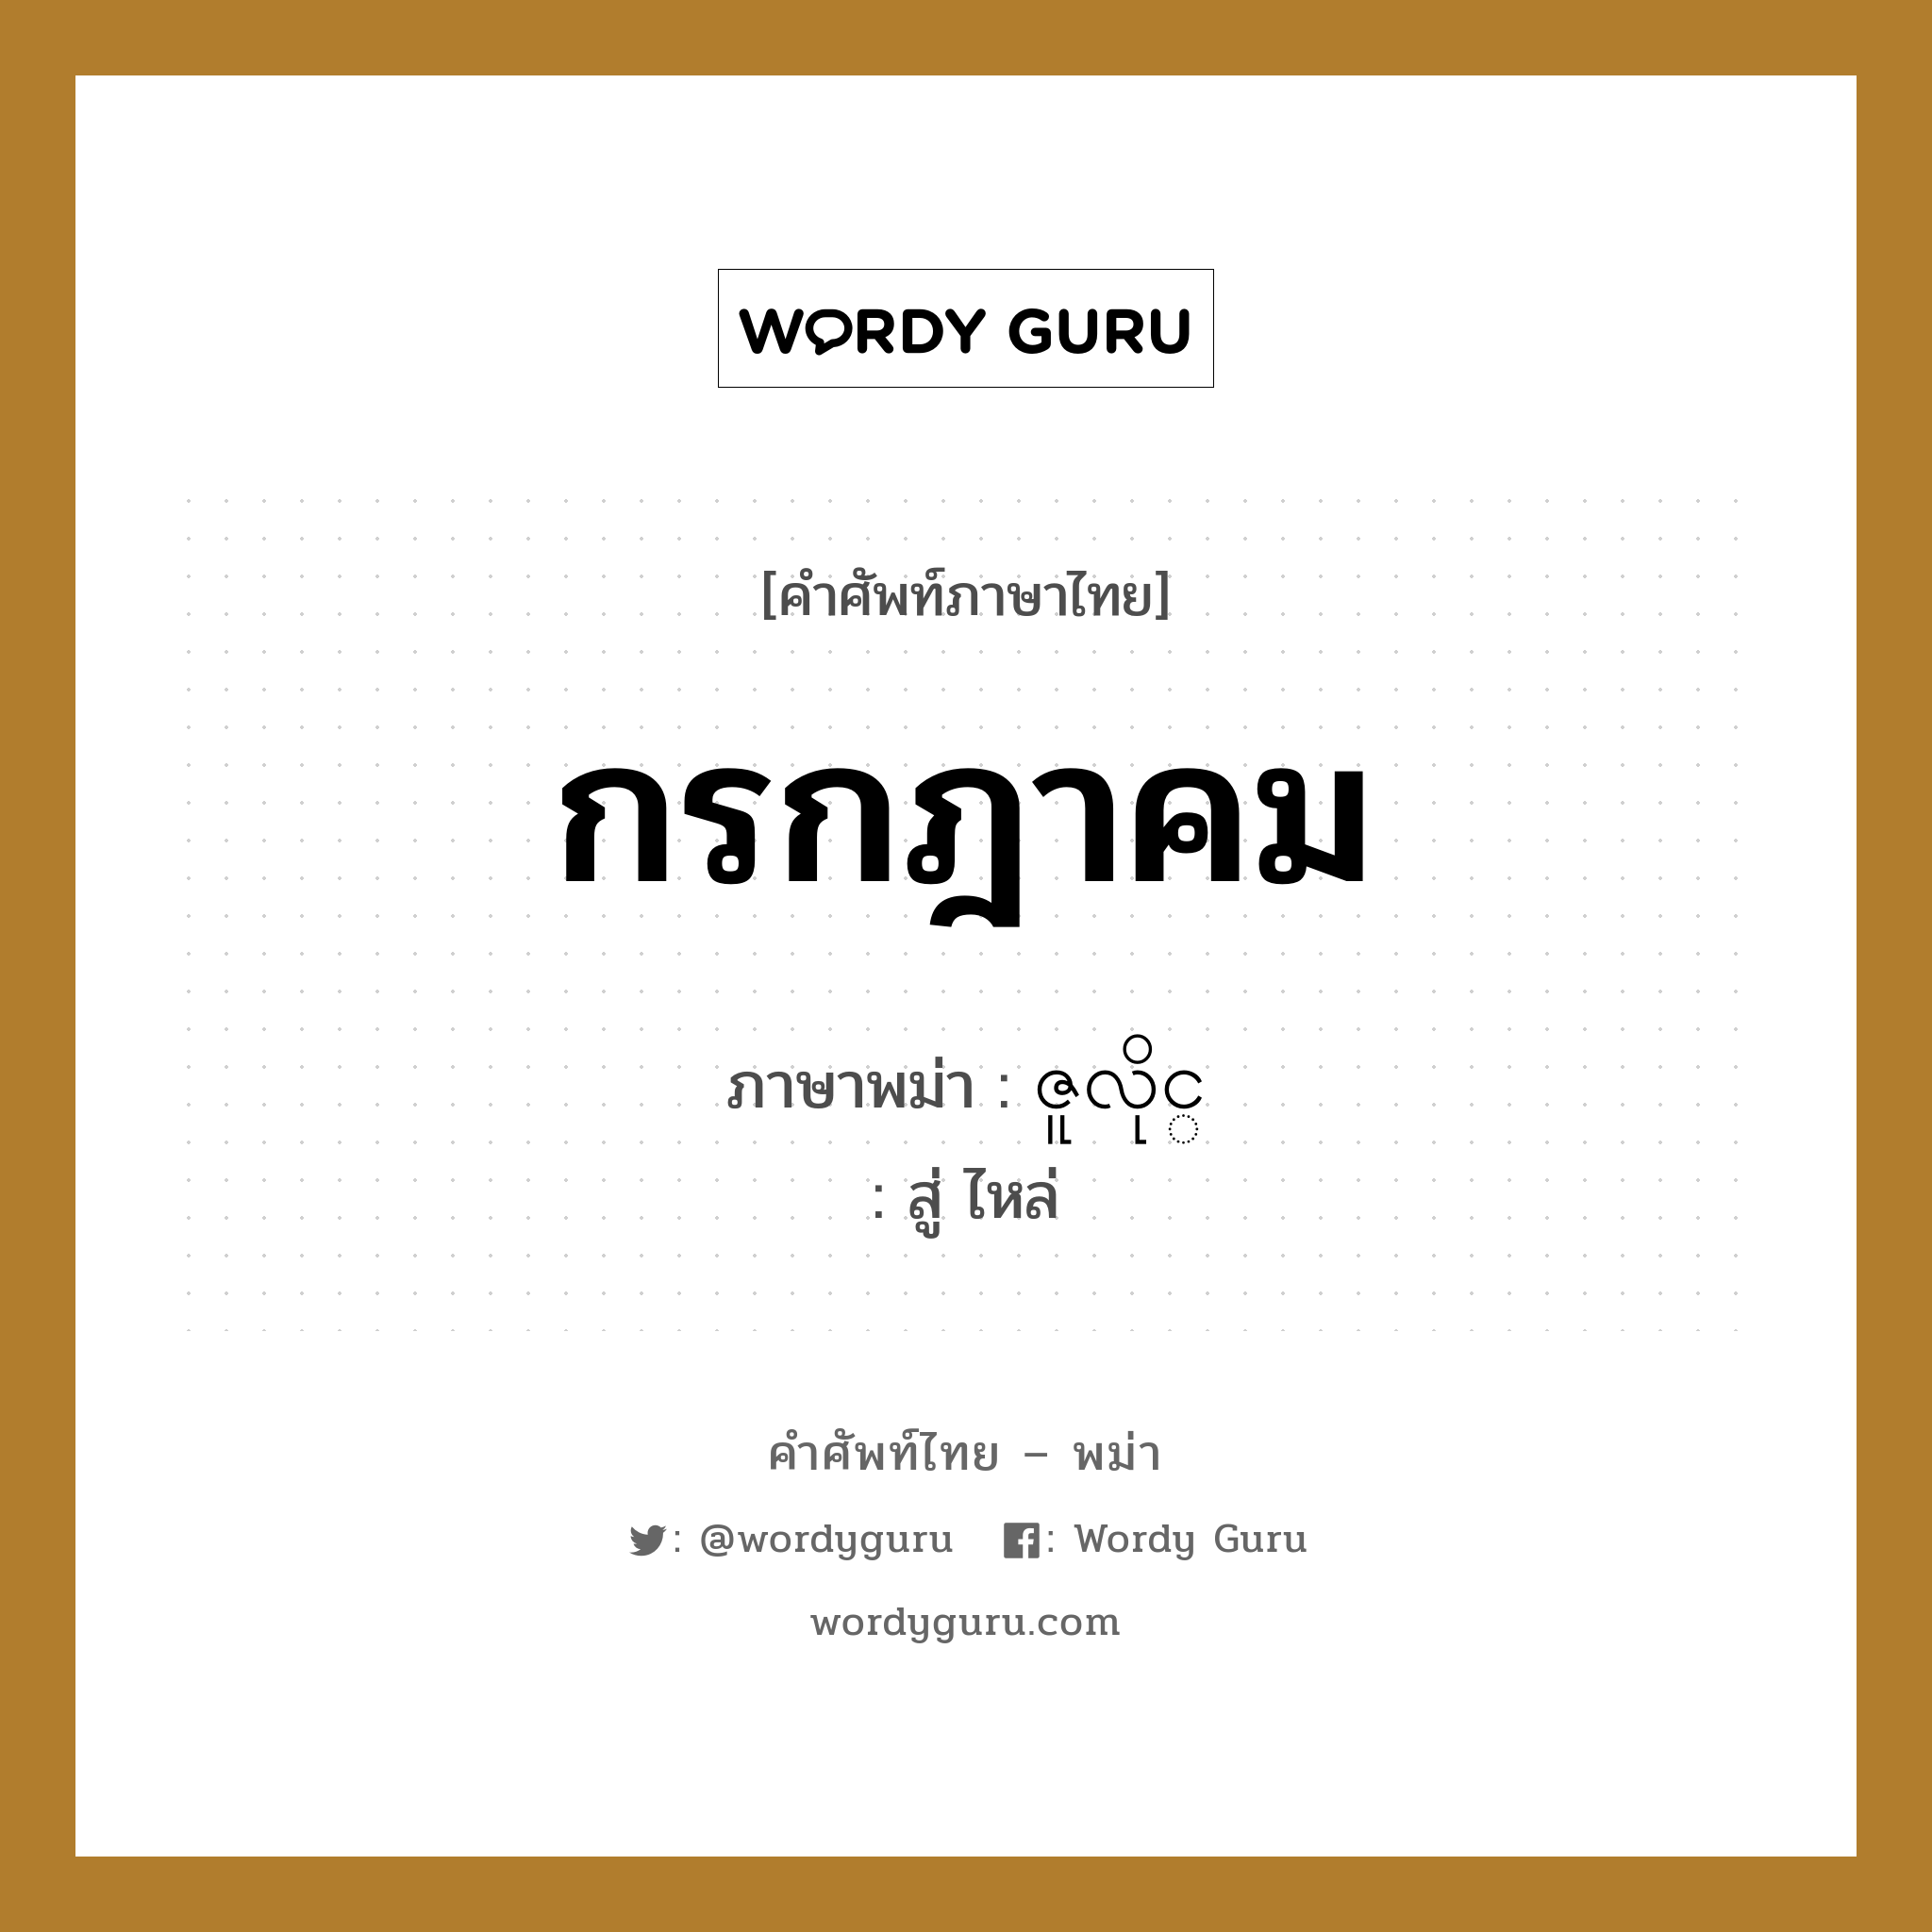 กรกฎาคม ภาษาพม่าคืออะไร, คำศัพท์ภาษาไทย - พม่า กรกฎาคม ภาษาพม่า ဇူလိုင္ หมวด หมวดวัน เดือน ปี สู่ ไหล่ หมวด หมวดวัน เดือน ปี